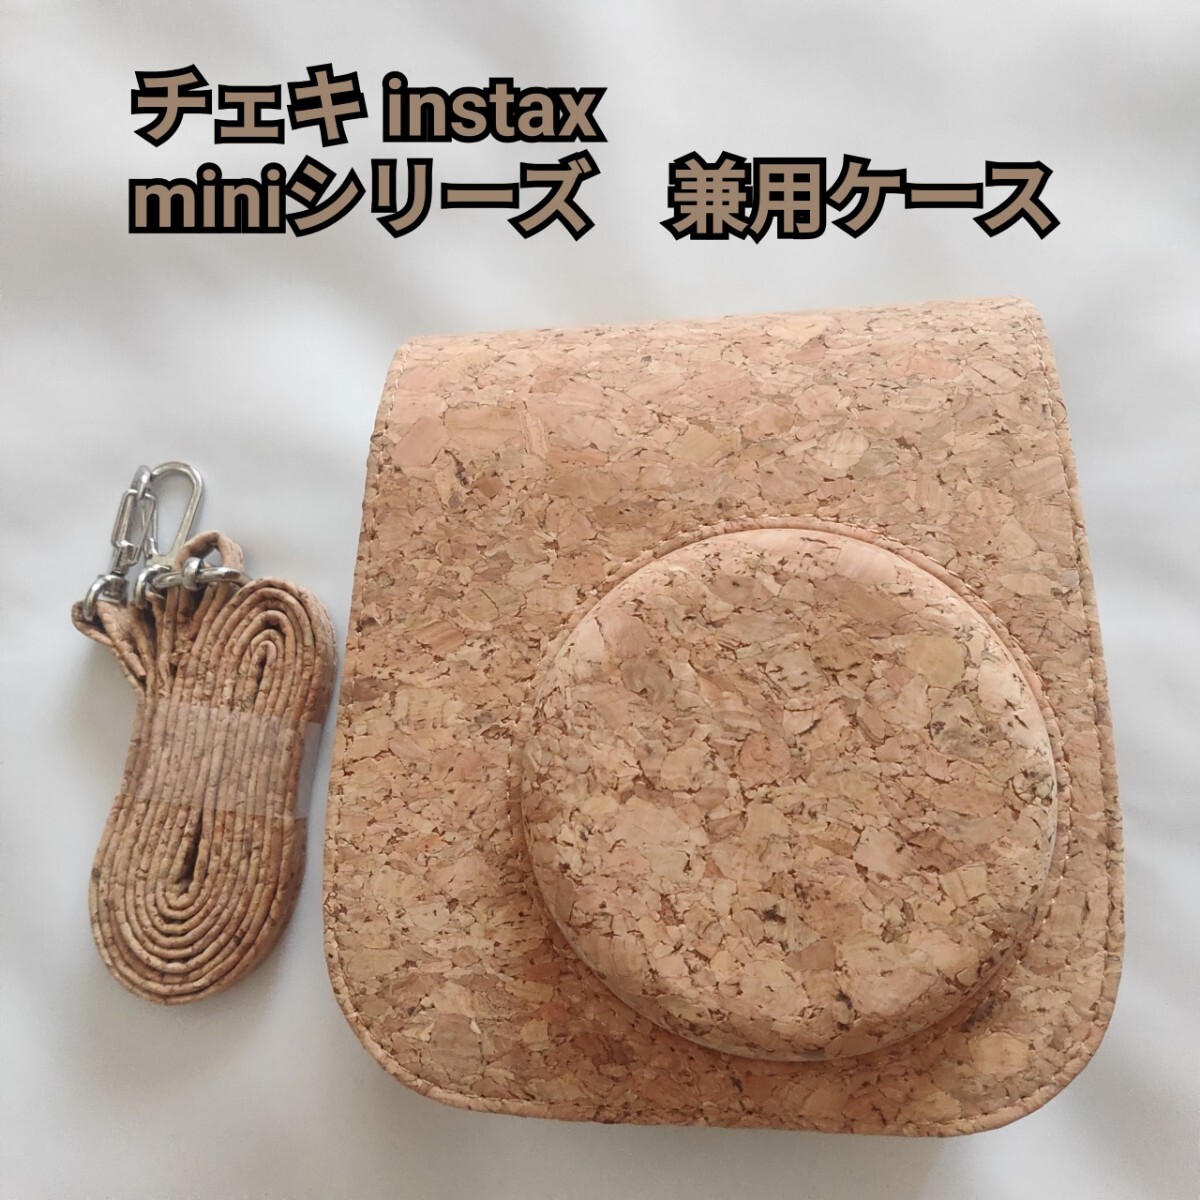  Cheki FUJIFILM instax mini series combined use case cork 